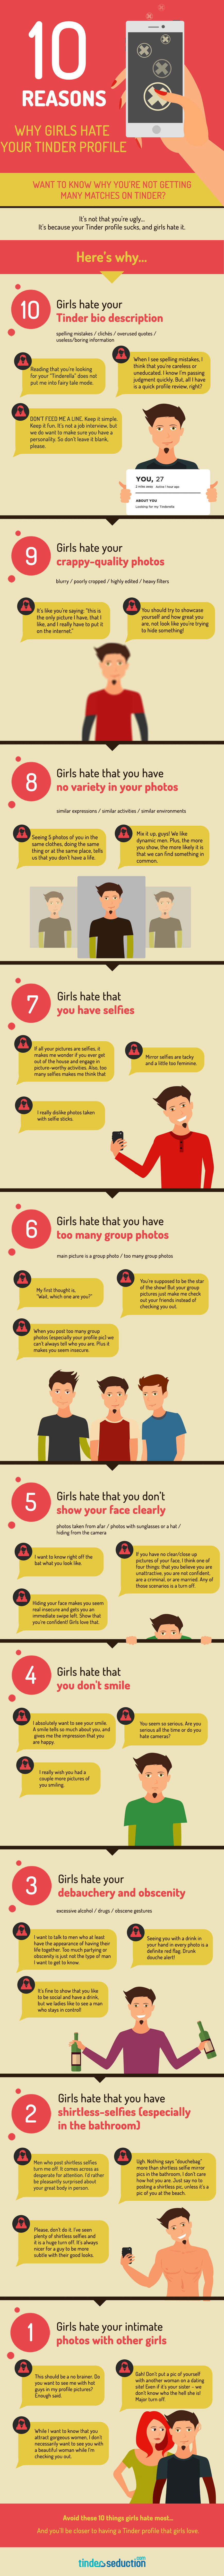 infografia-fracasos-chicas-tinder